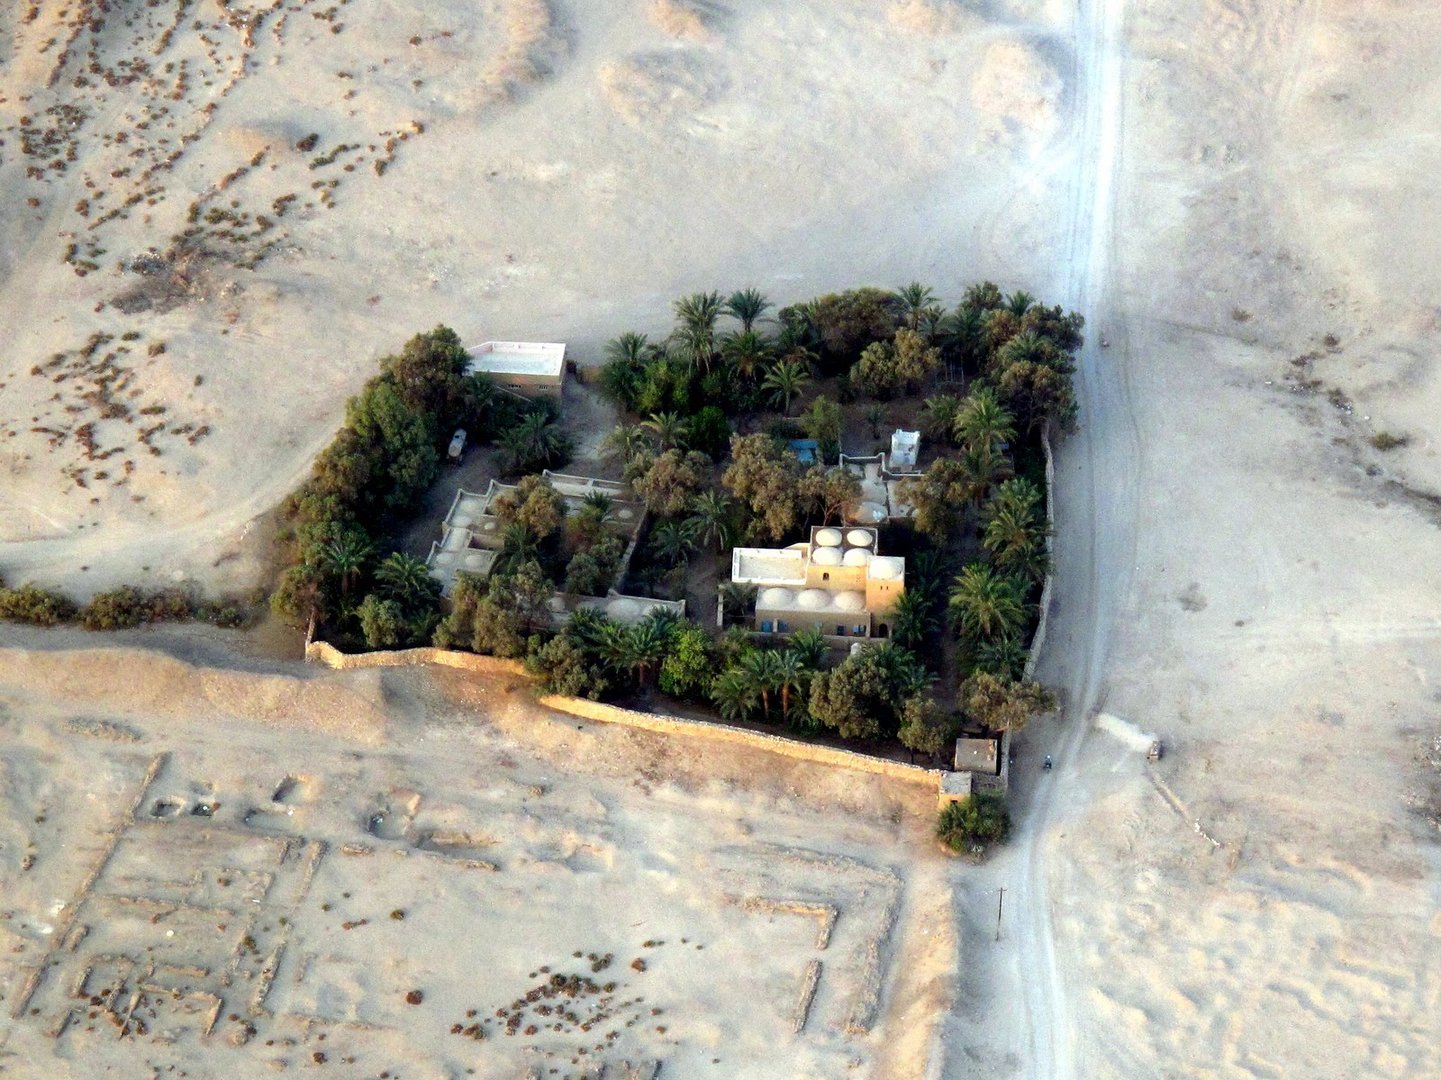 Haus in der Wüste